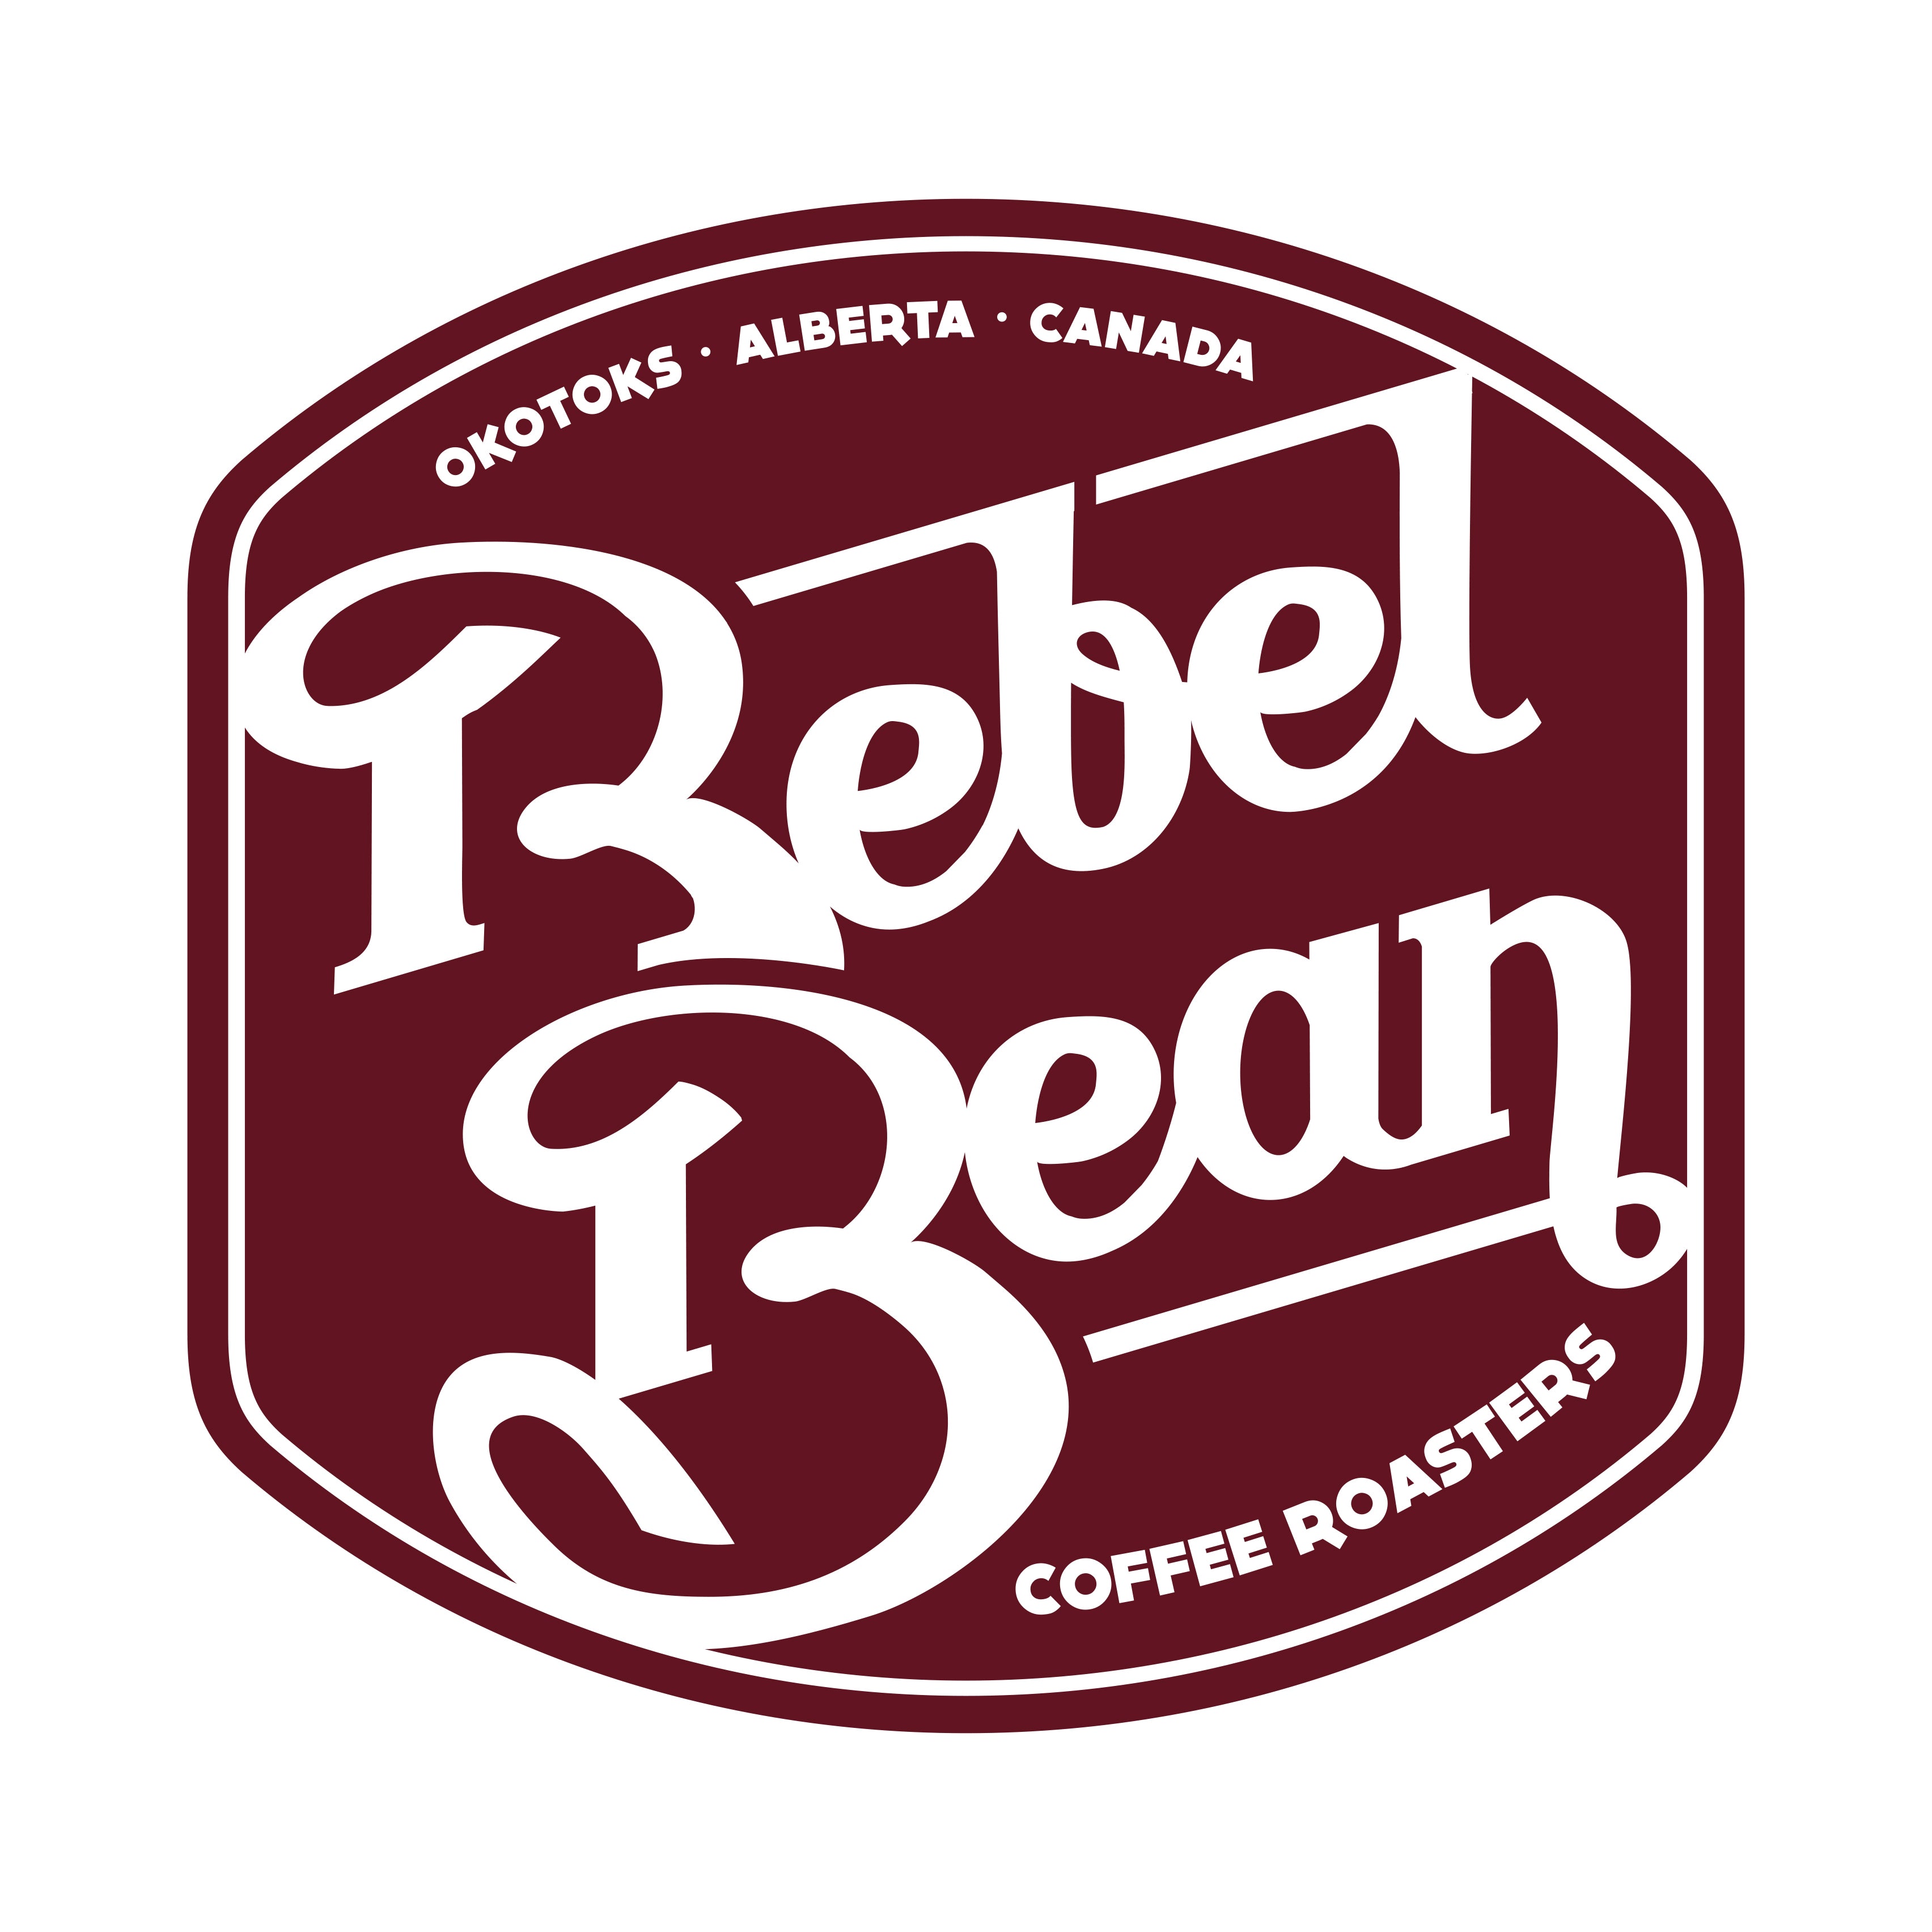 rebelbeanfundraising